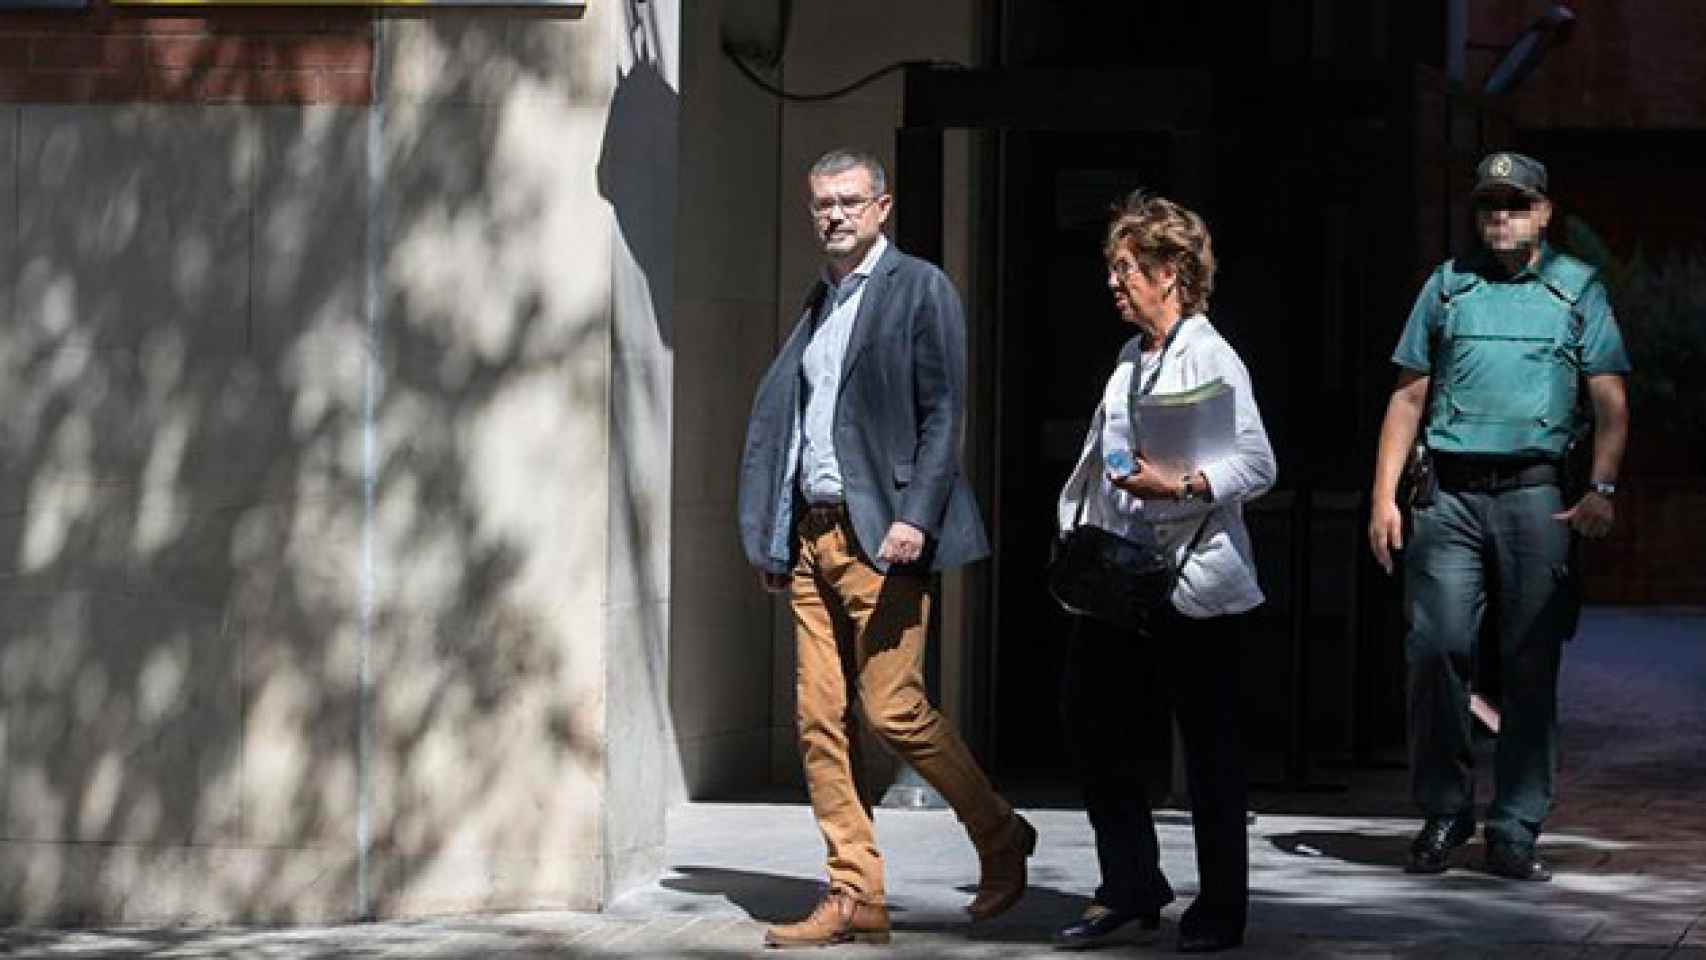 El director general de comunicación de la Generalitat, Jaume Clotet, a su salida tras declarar esta mañana ante la Guardia Civil en la Comandancia de Travessera de Grácia (Barcelona) / EFE imputados